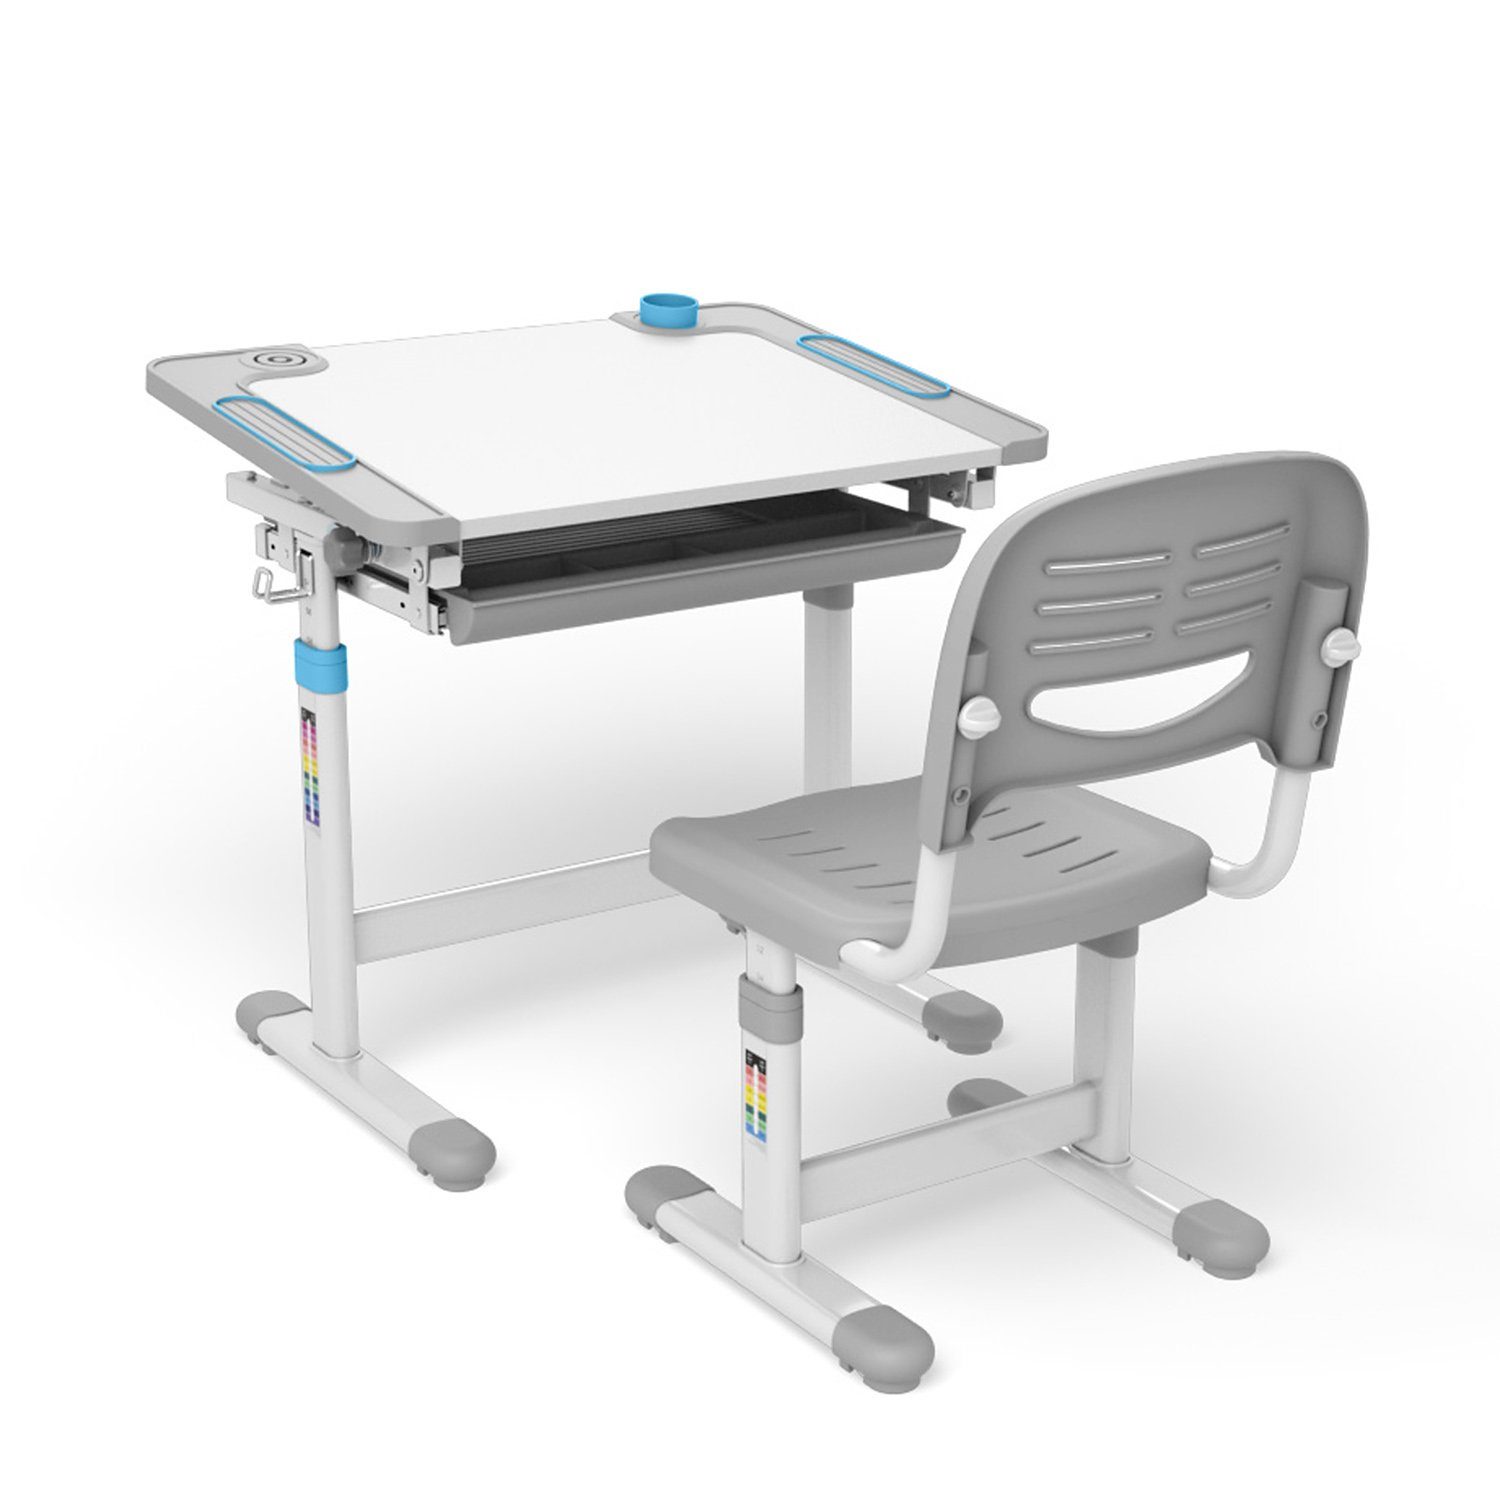 Ergo Office Kinderschreibtisch verstellbare Stuhl, inkl. - Sitzhöhe - Rückenlehne ER-418, Tischhöhe